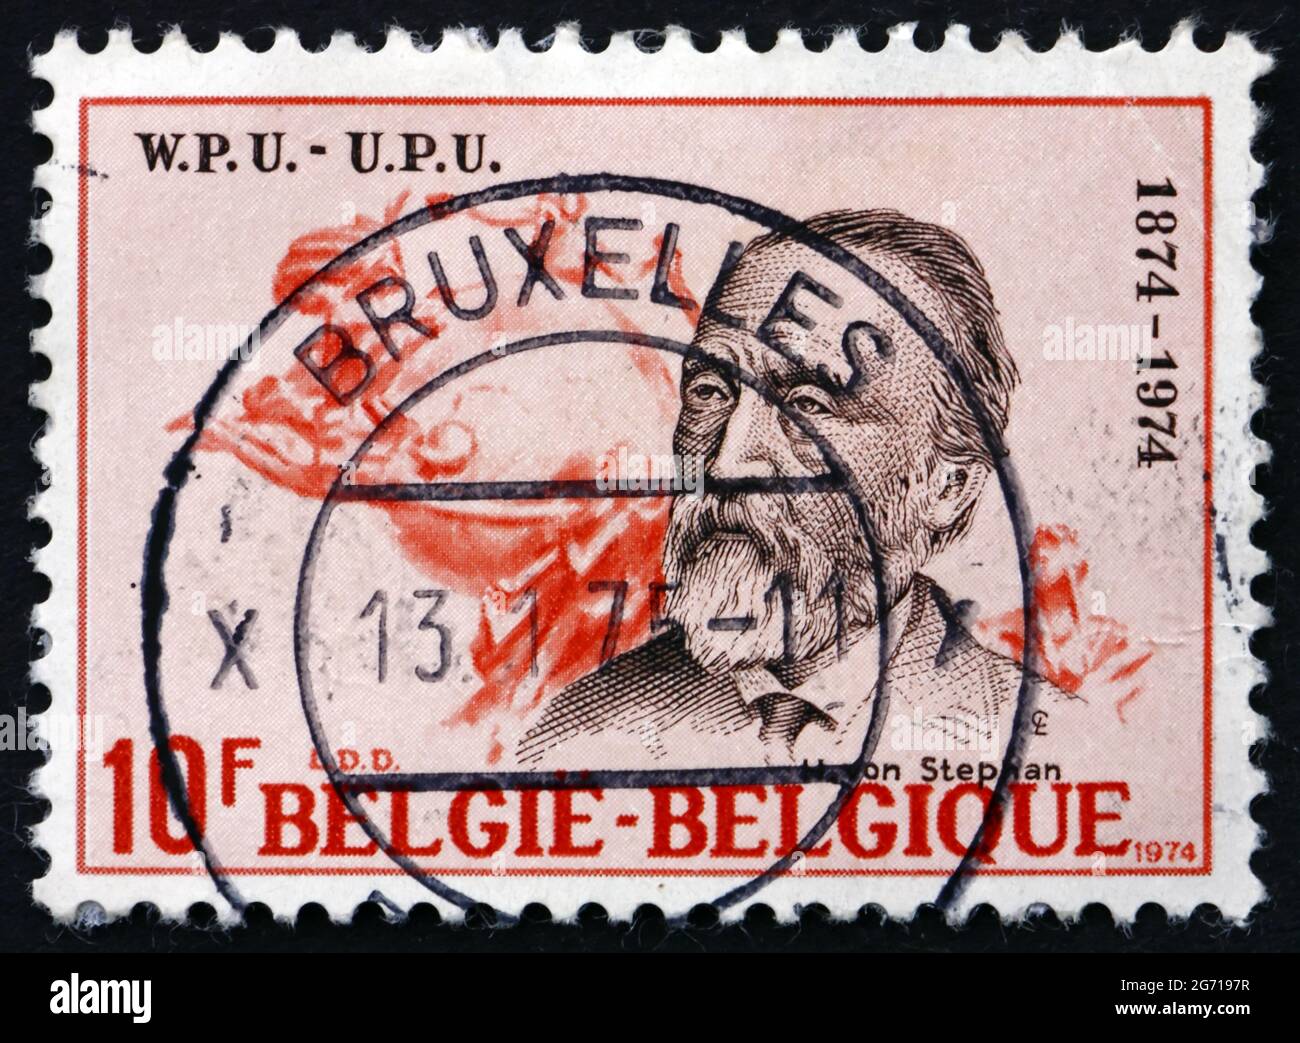 BELGIQUE - VERS 1974: Un timbre imprimé en Belgique montre Heinrich von Stephan, directeur général de poste pour l'Empire allemand qui a réorganisé le po allemand Banque D'Images